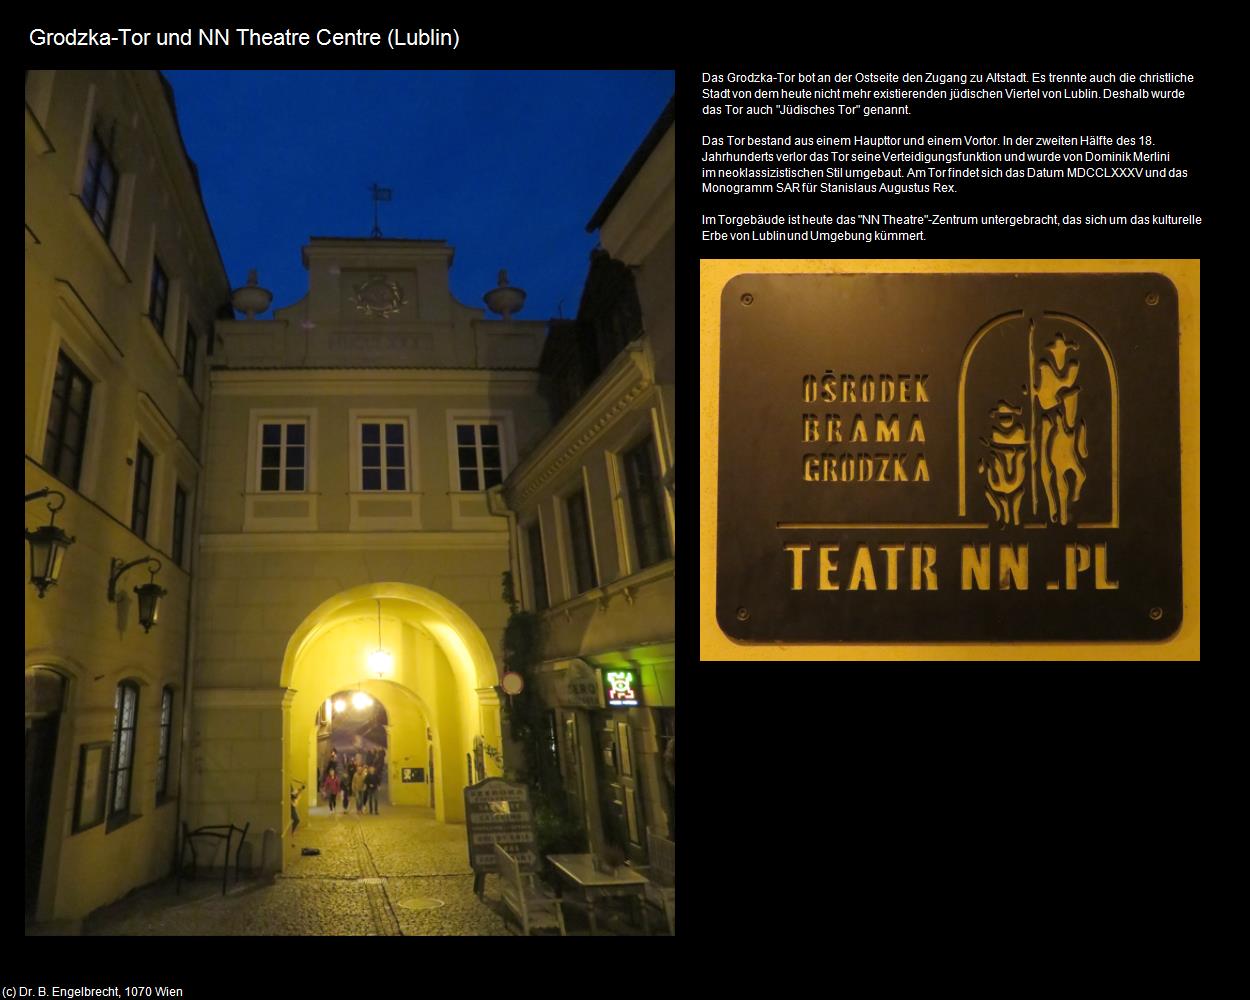 Grodzka-Tor und NN Theatre Centre (Lublin) in POLEN-Galizien